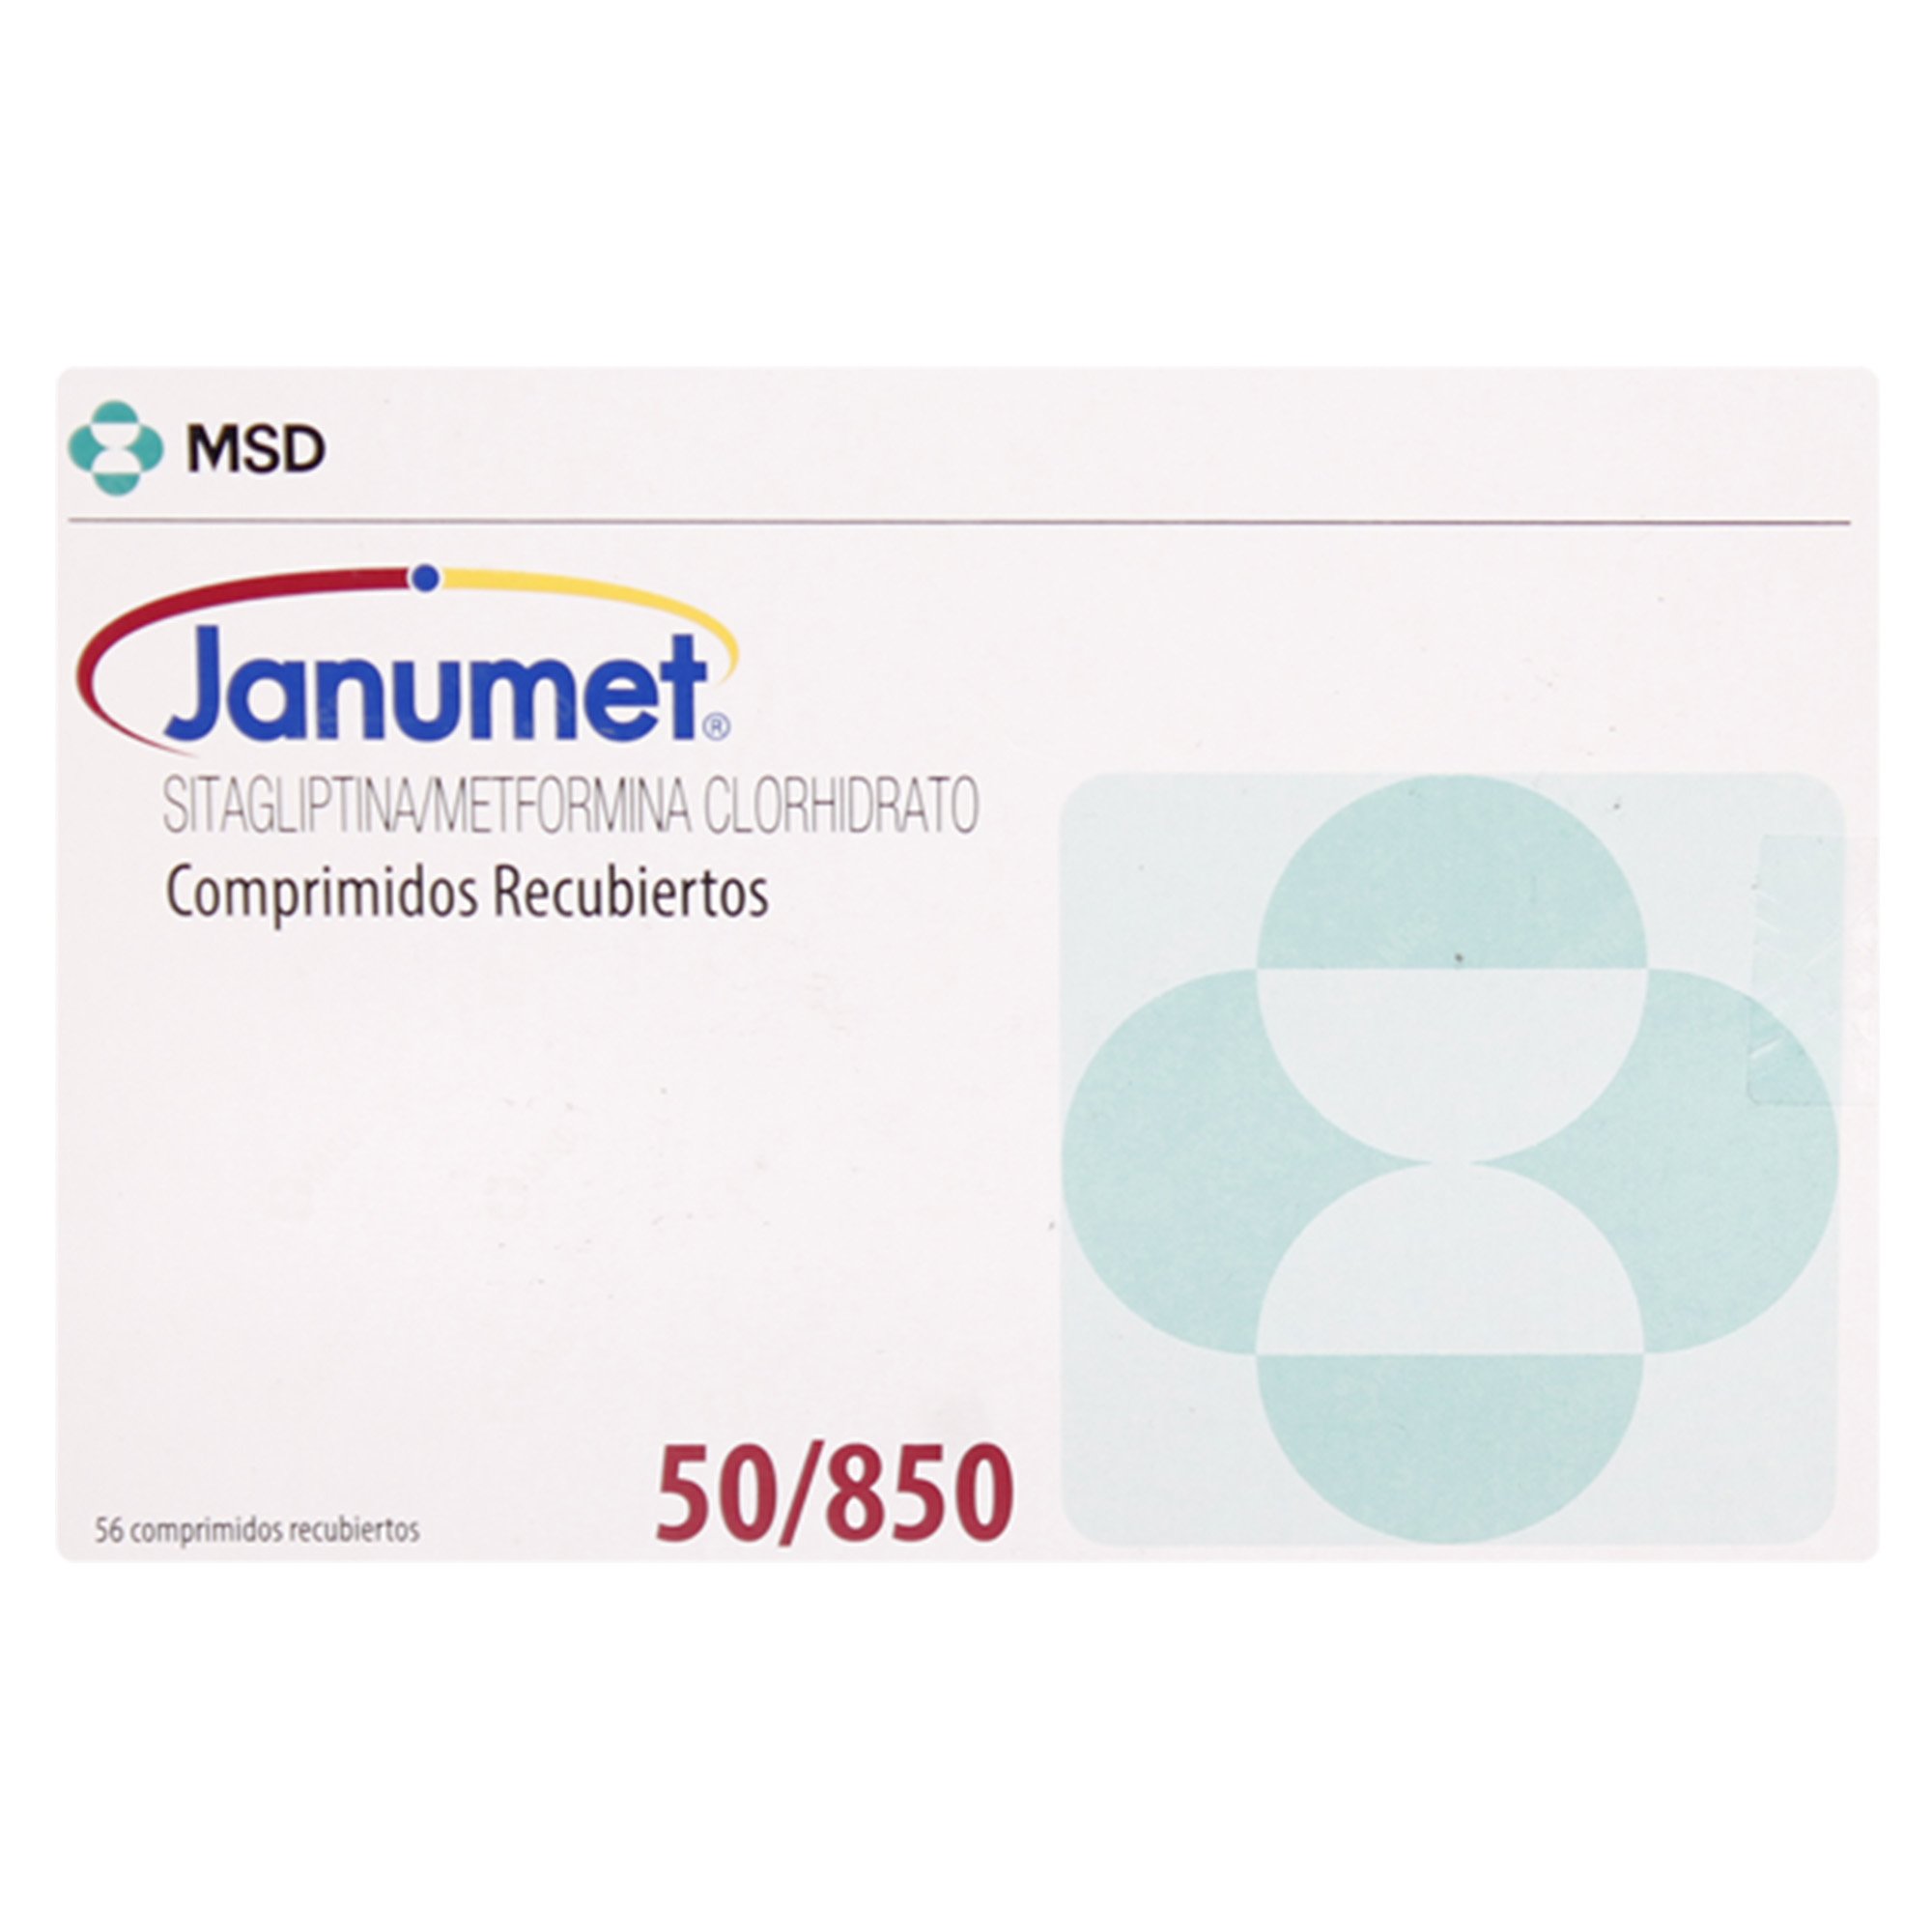 Janumet 50850 Sitagliptina 50 Mg 56 Comprimidos Recubiertos Farmacias Cruz Verde 3104